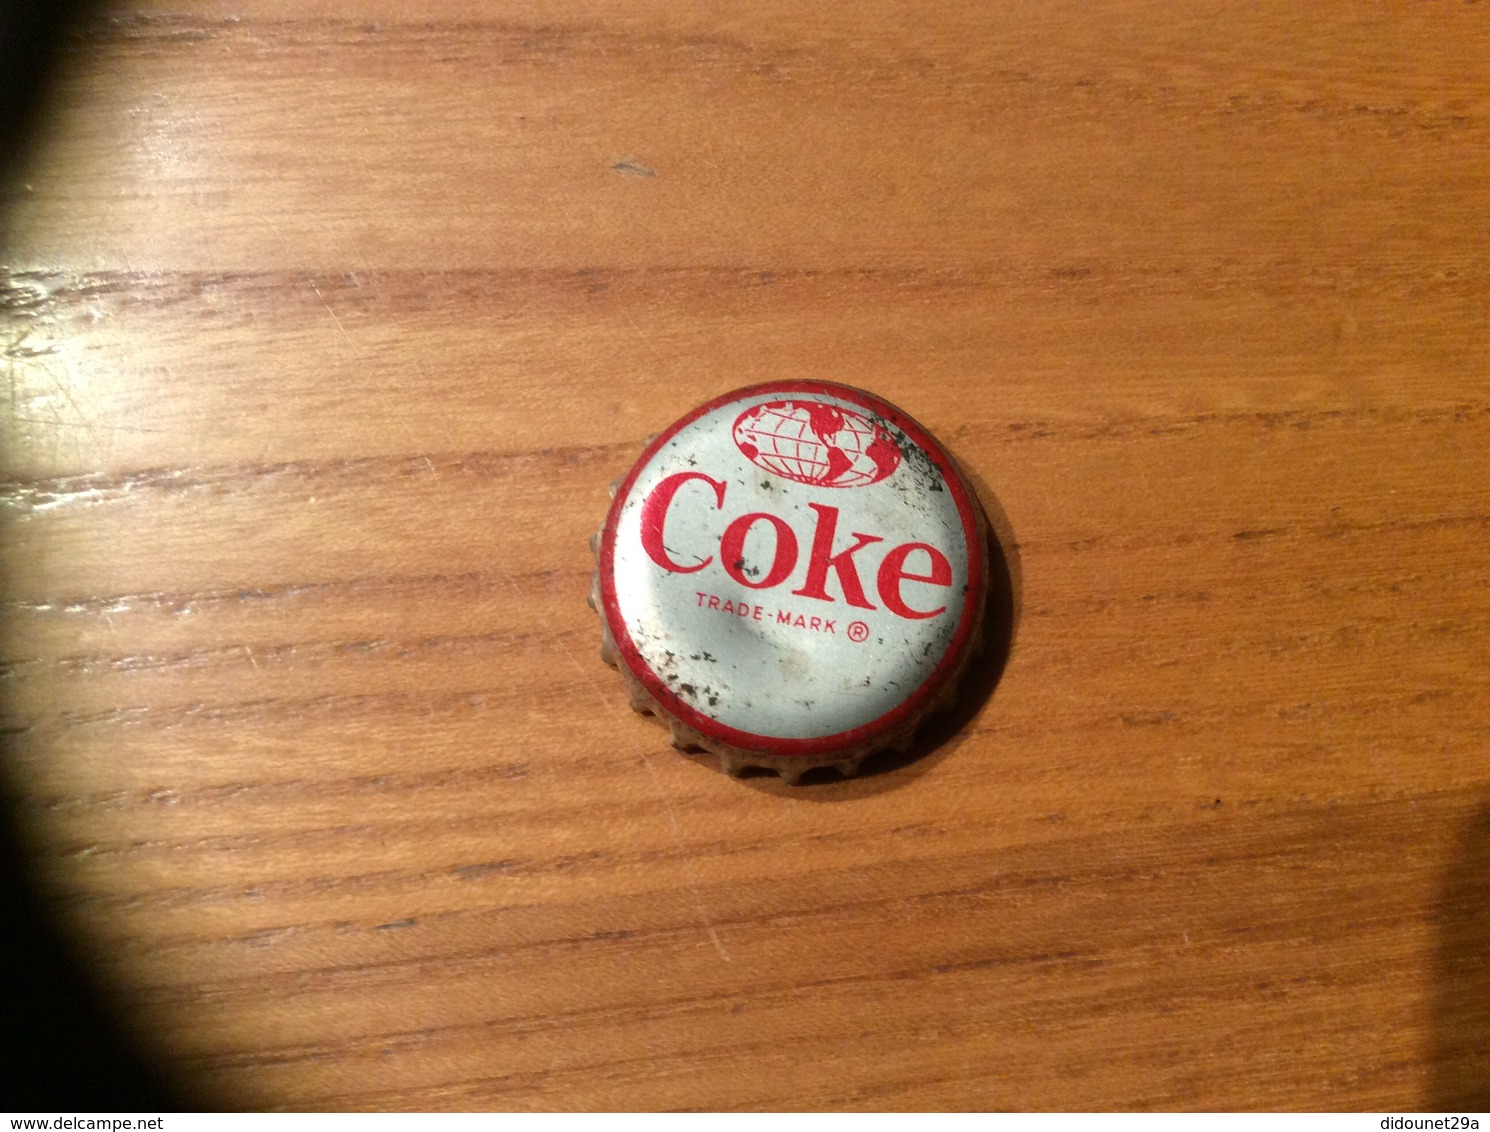 Ancienne Capsule "Coke N°63-MARTINIQUE-STATUE OF EMPRESS JOSEPHINE"Etats-Unis (USA) Coca-Cola, Série Pays (Liège Enlevé) - Soda